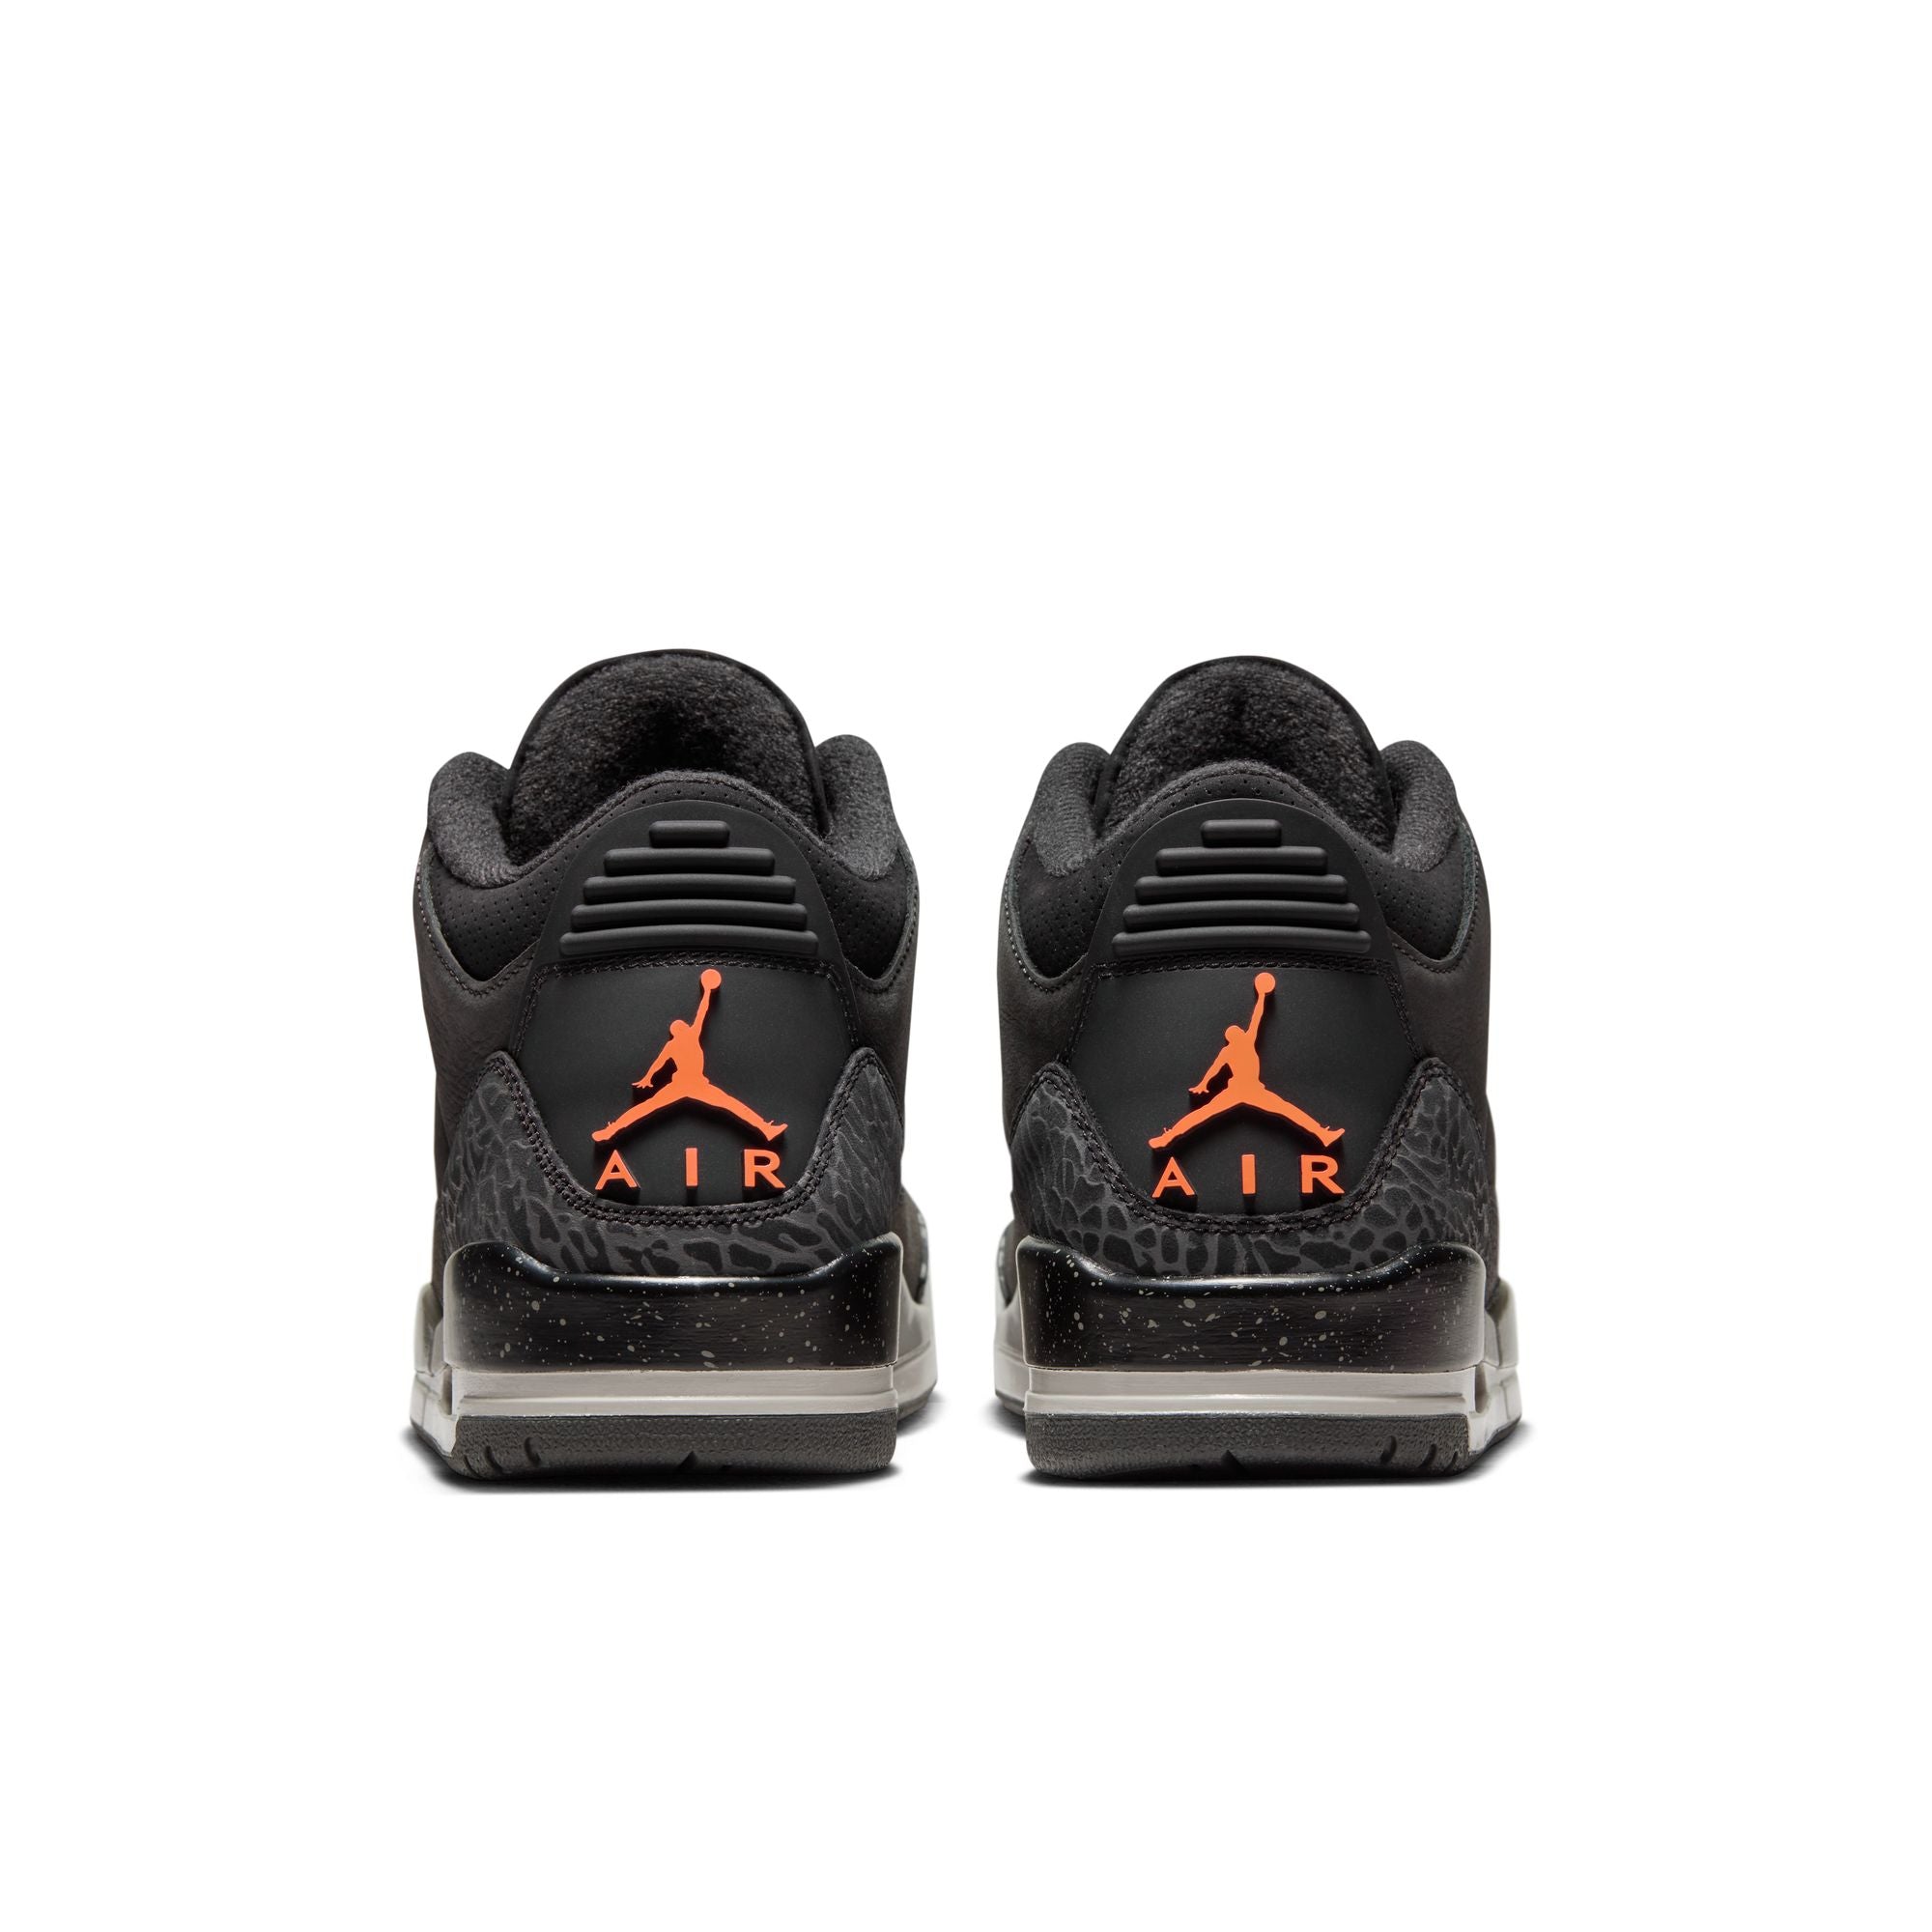 Air Jordan 3 “Fear”